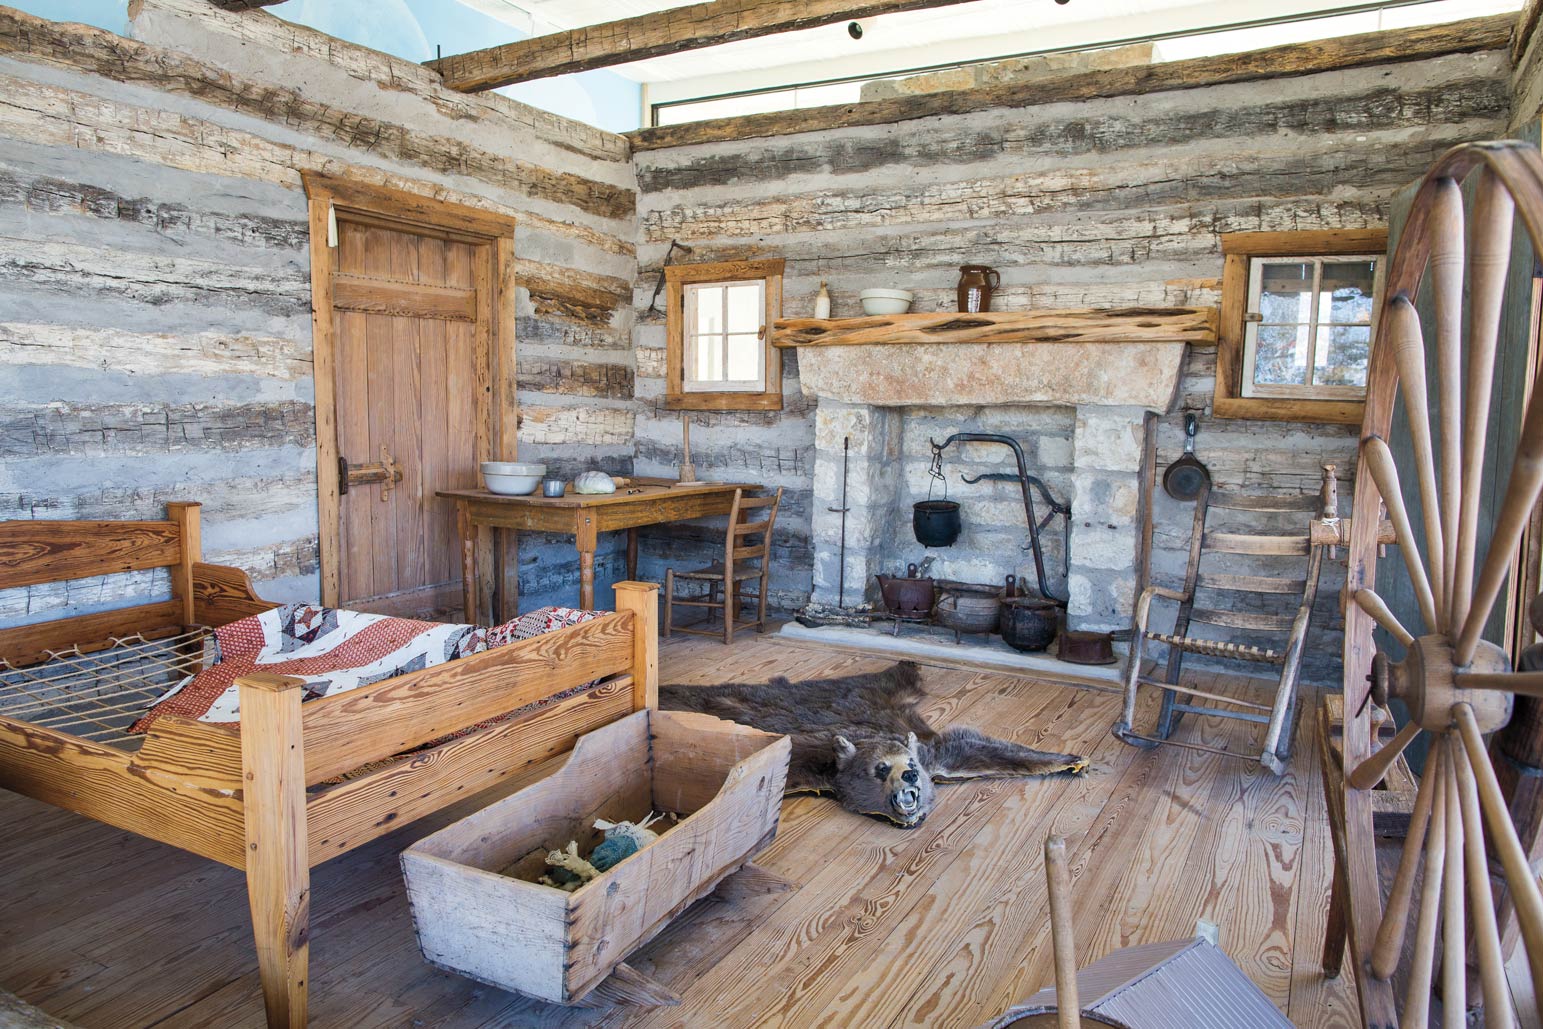 Inside the Little River Log Cabin